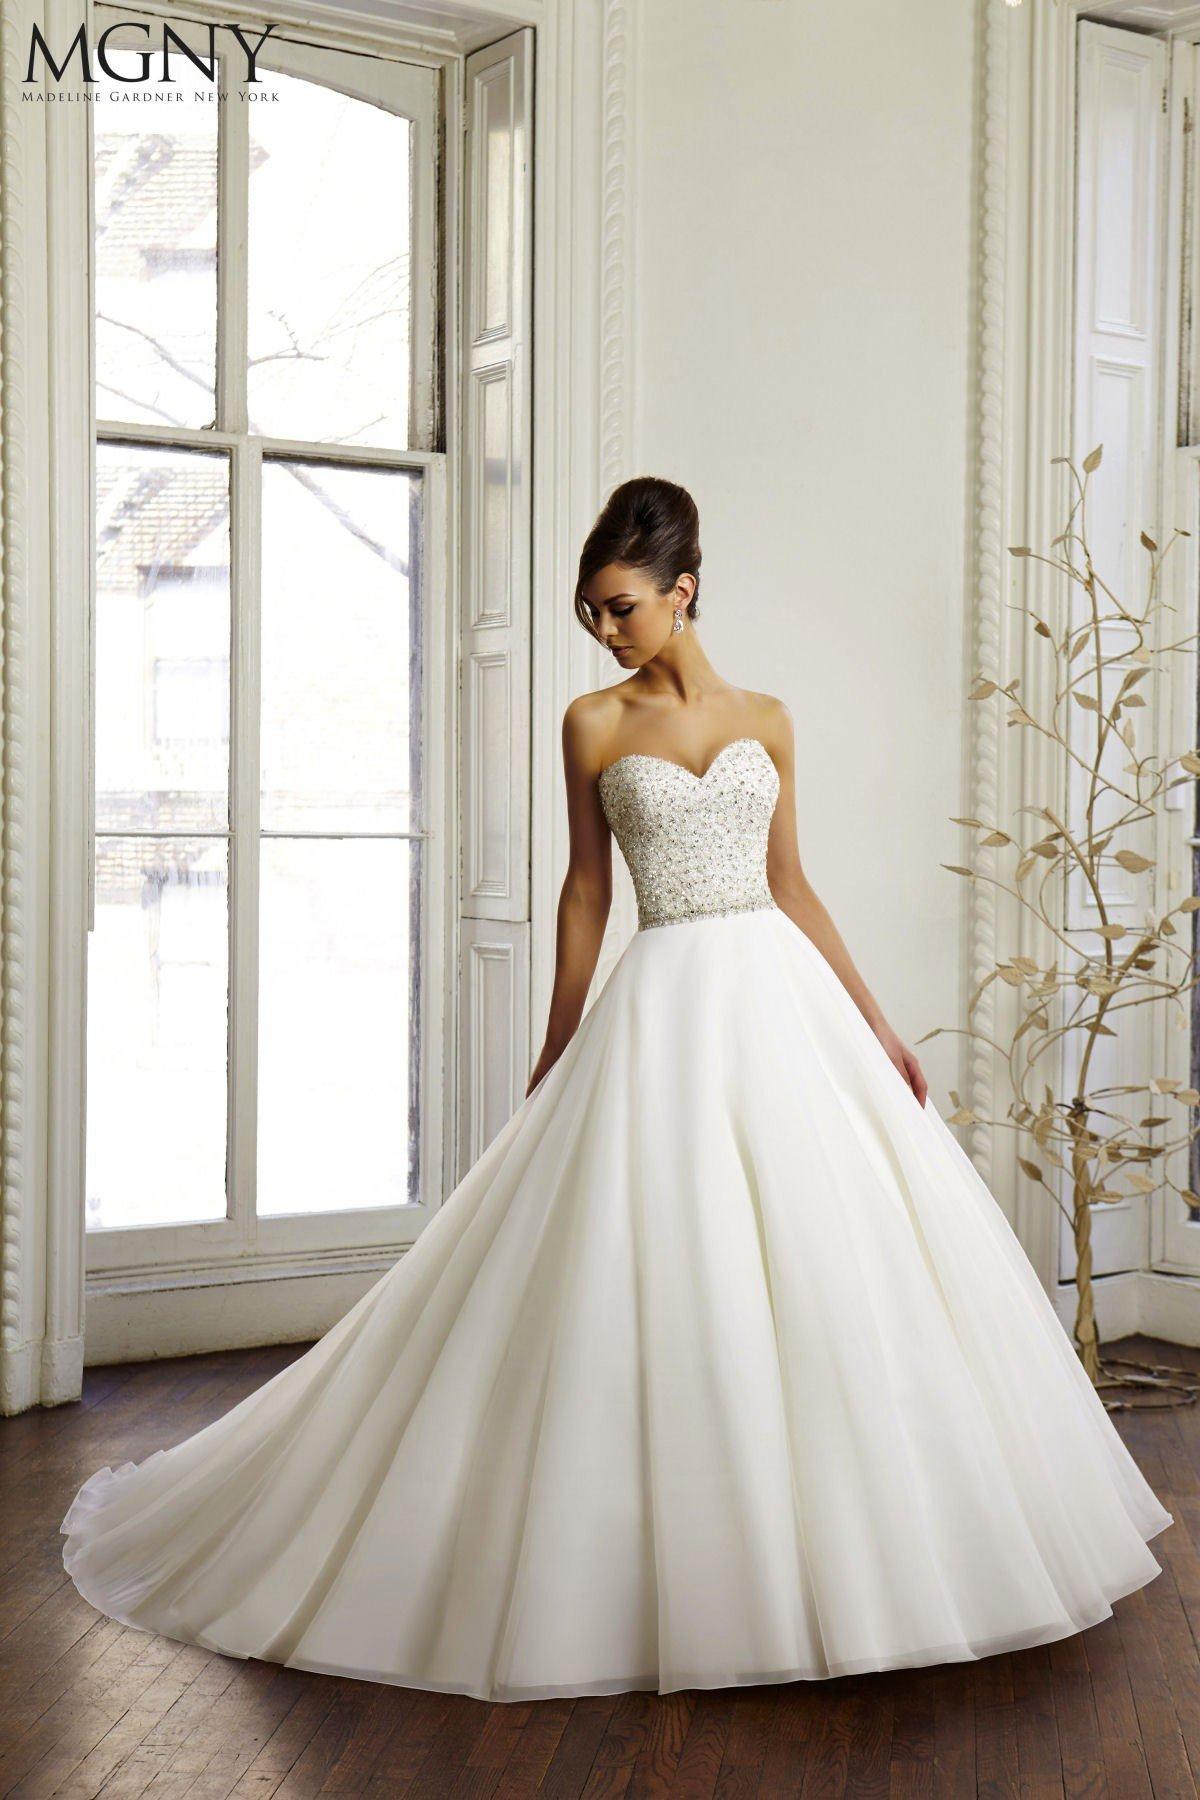 UK Princess White/ivory Long Sleeve Satin A Line Belt Wedding Dresses Size 6-18 